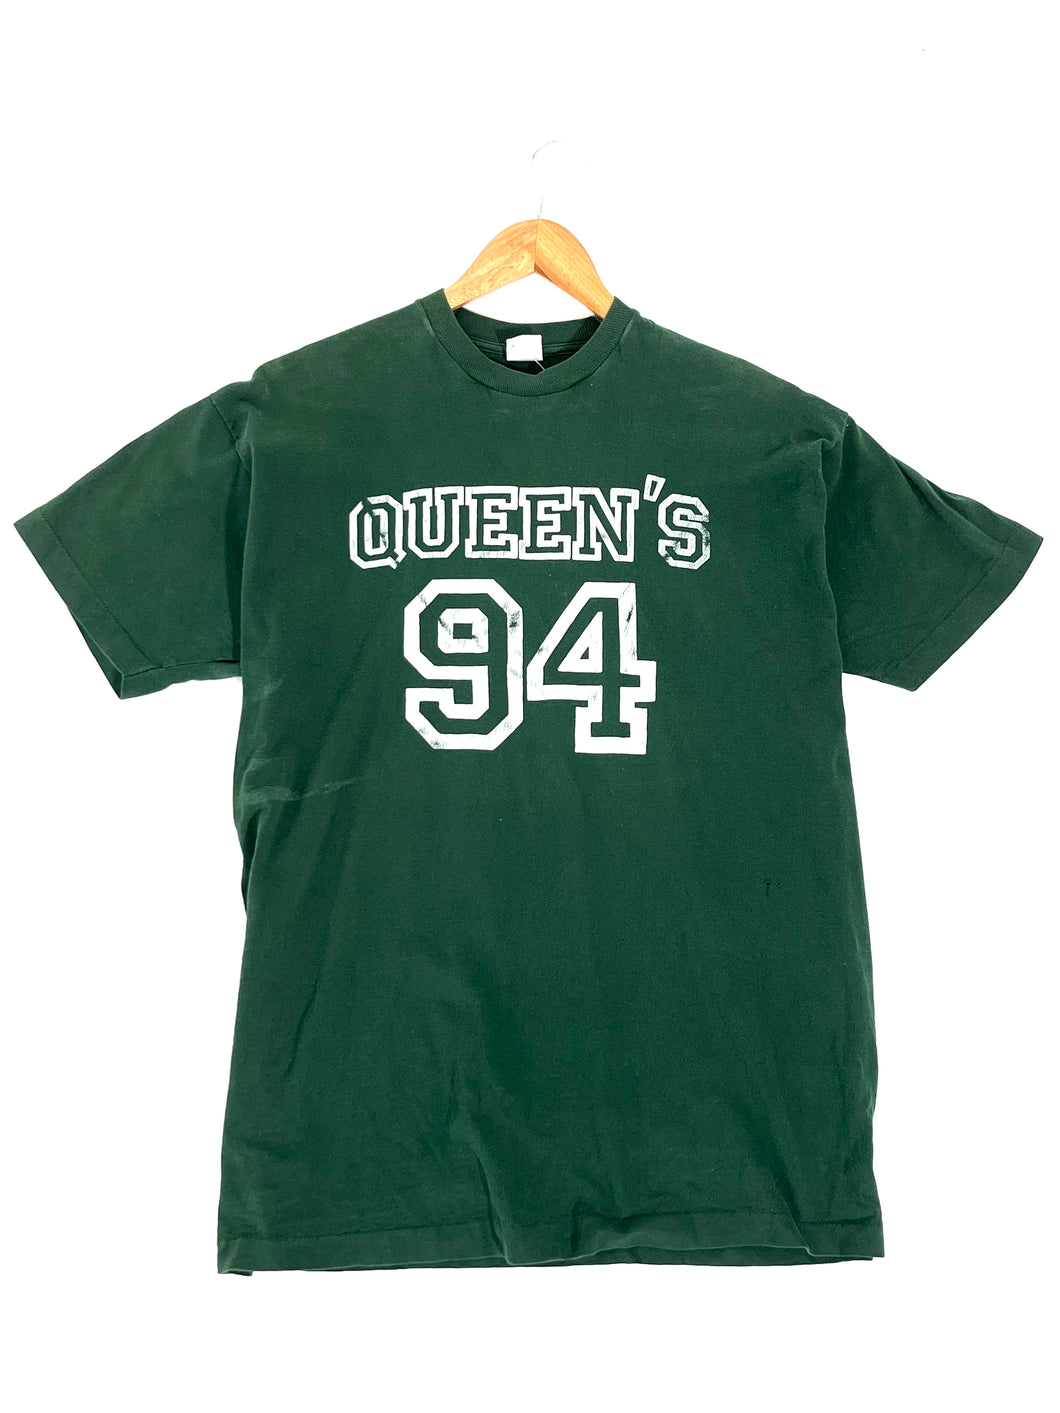 Vintage 1994 QUEENS T-Shirt Sz. XL